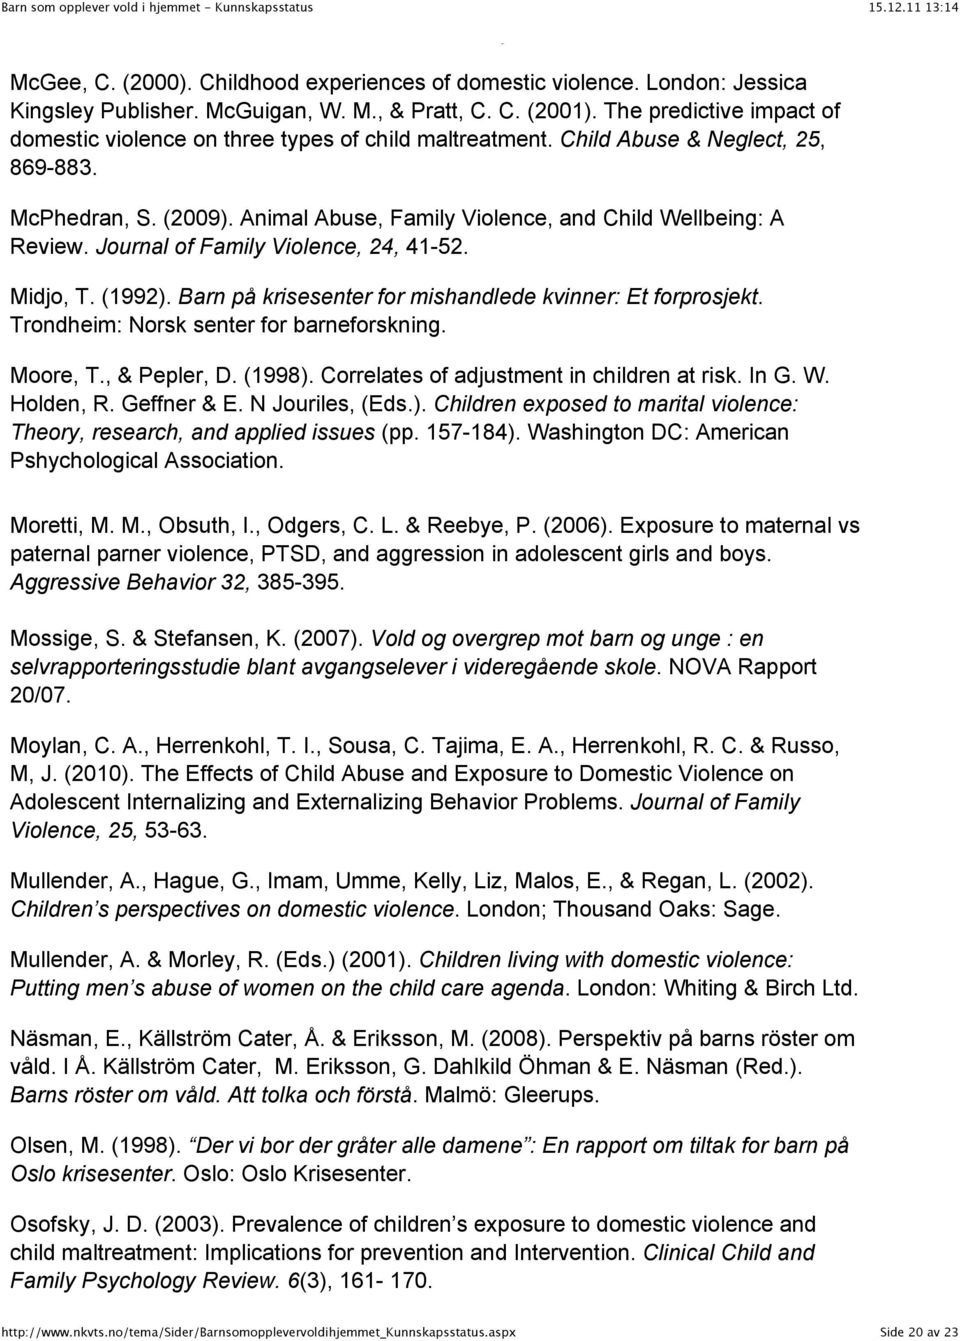 Animal Abuse, Family Violence, and Child Wellbeing: A Review. Journal of Family Violence, 24, 41-52. Midjo, T. (1992). Barn på krisesenter for mishandlede kvinner: Et forprosjekt.